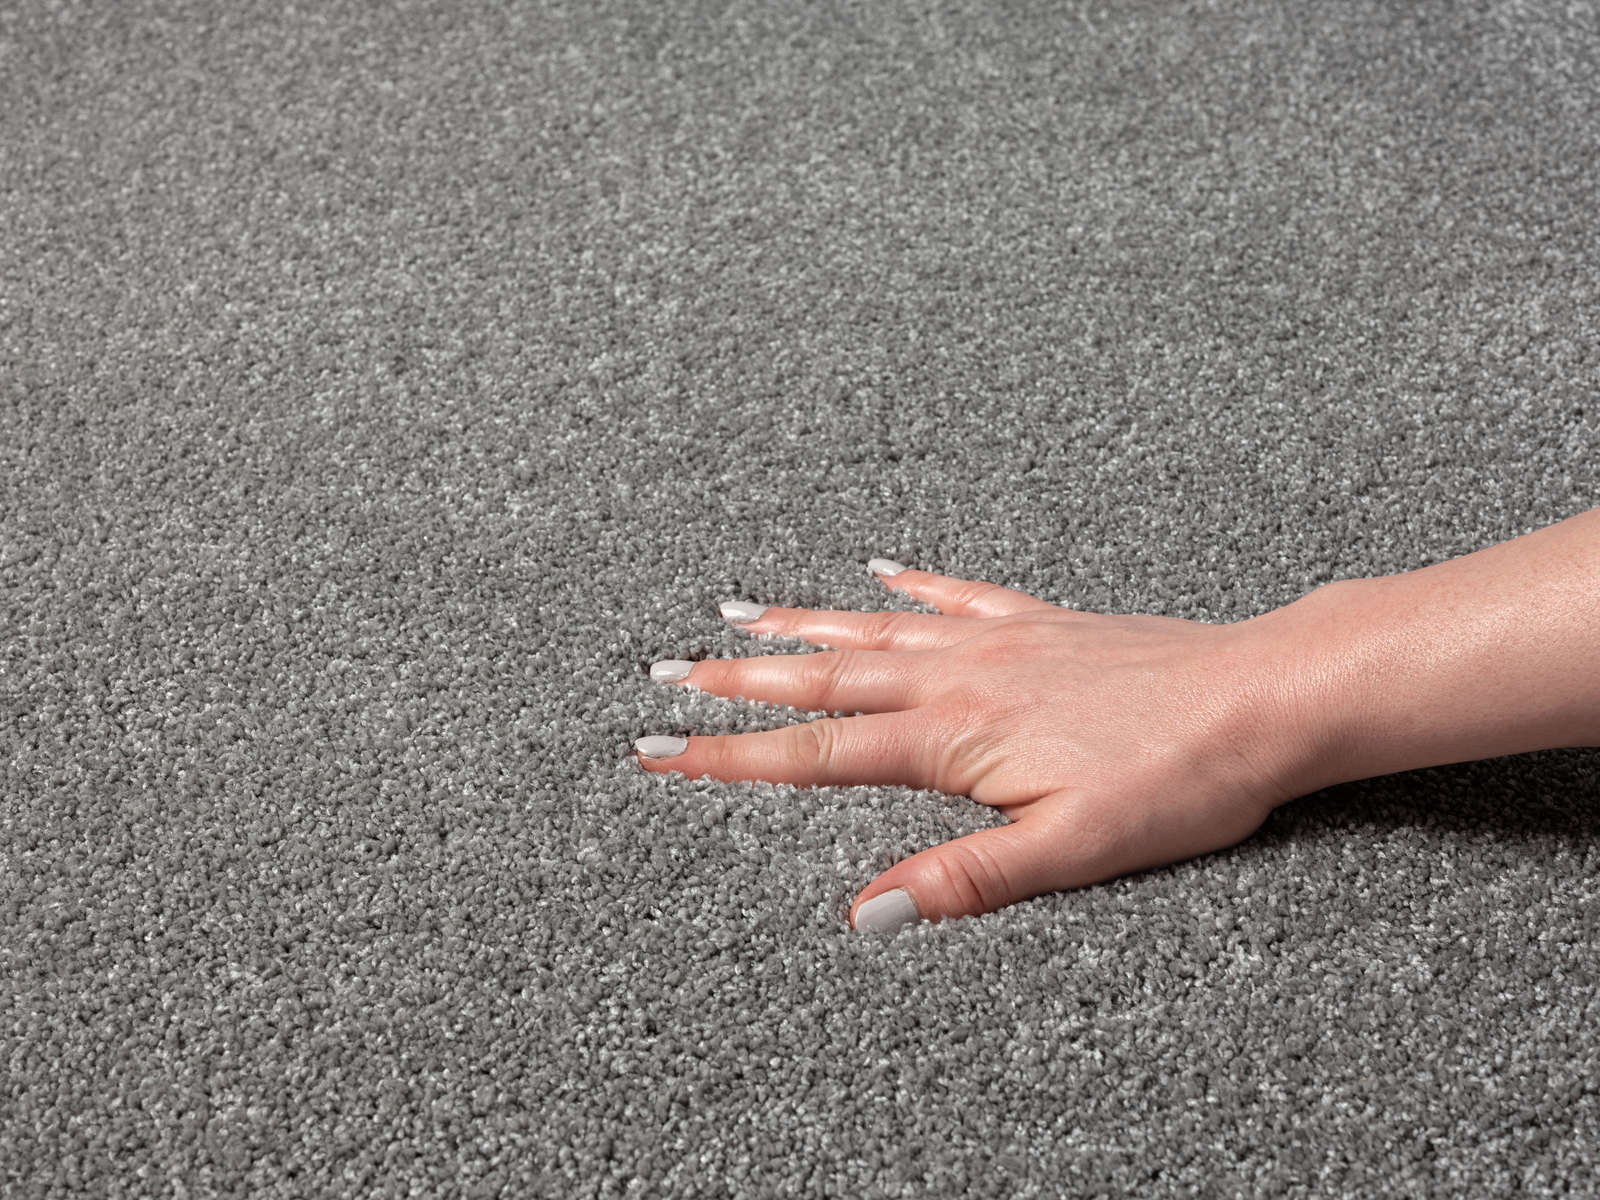             Flauschiger Kurzflor Teppich in Grau – 290 x 200 cm
        